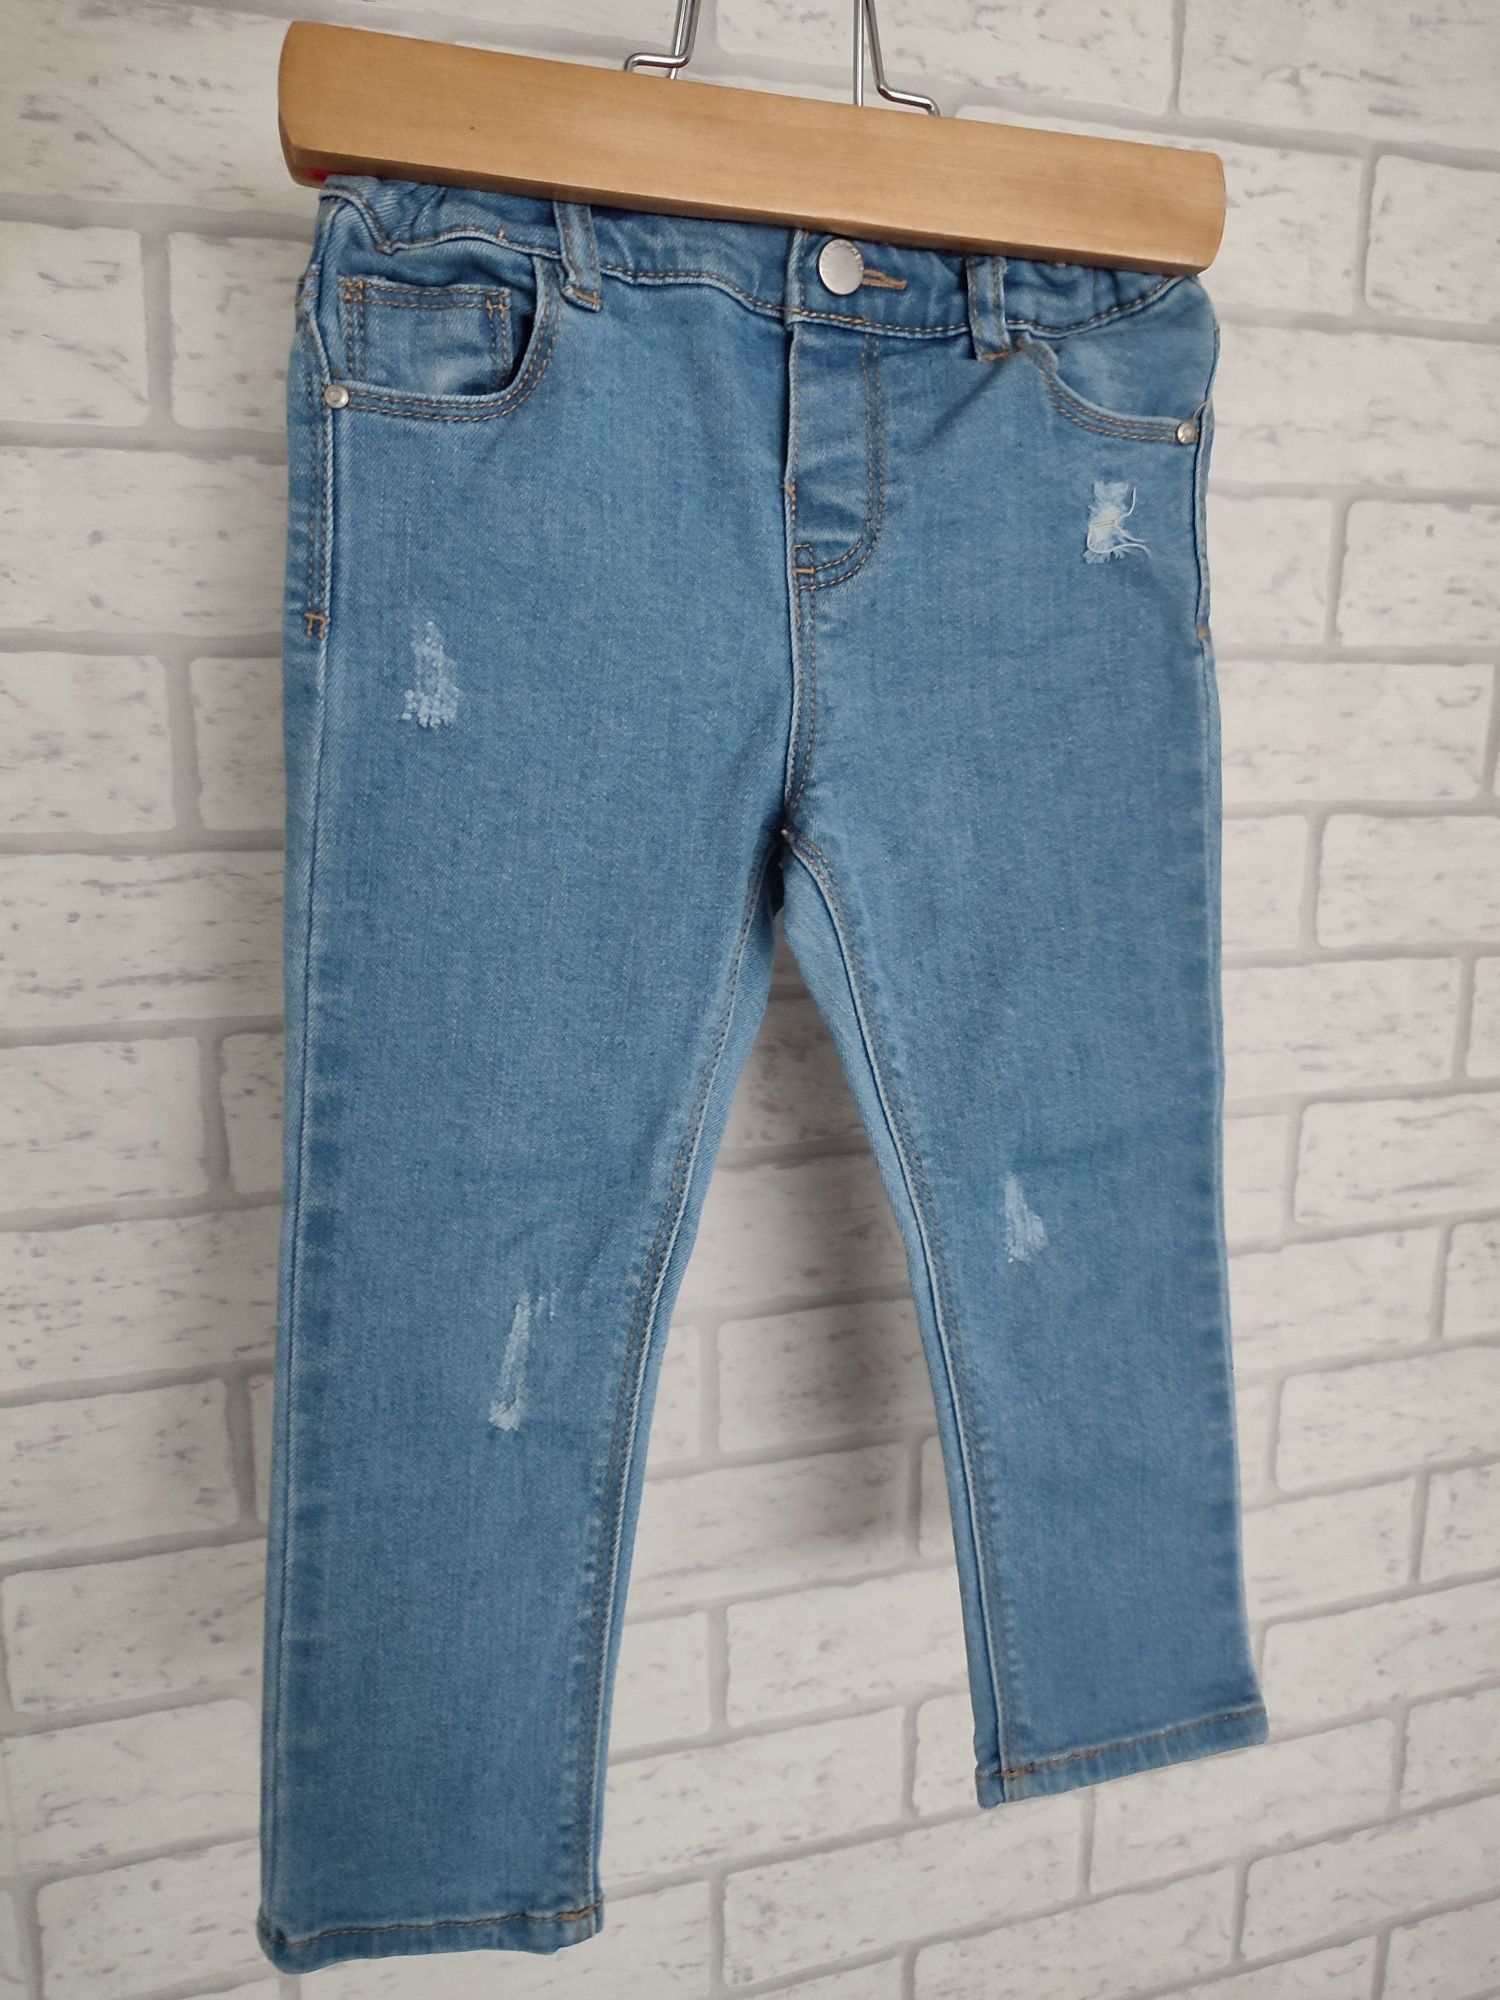 Spodnie jeansowe, jeansy Zara r.92 (ciemniejsze)